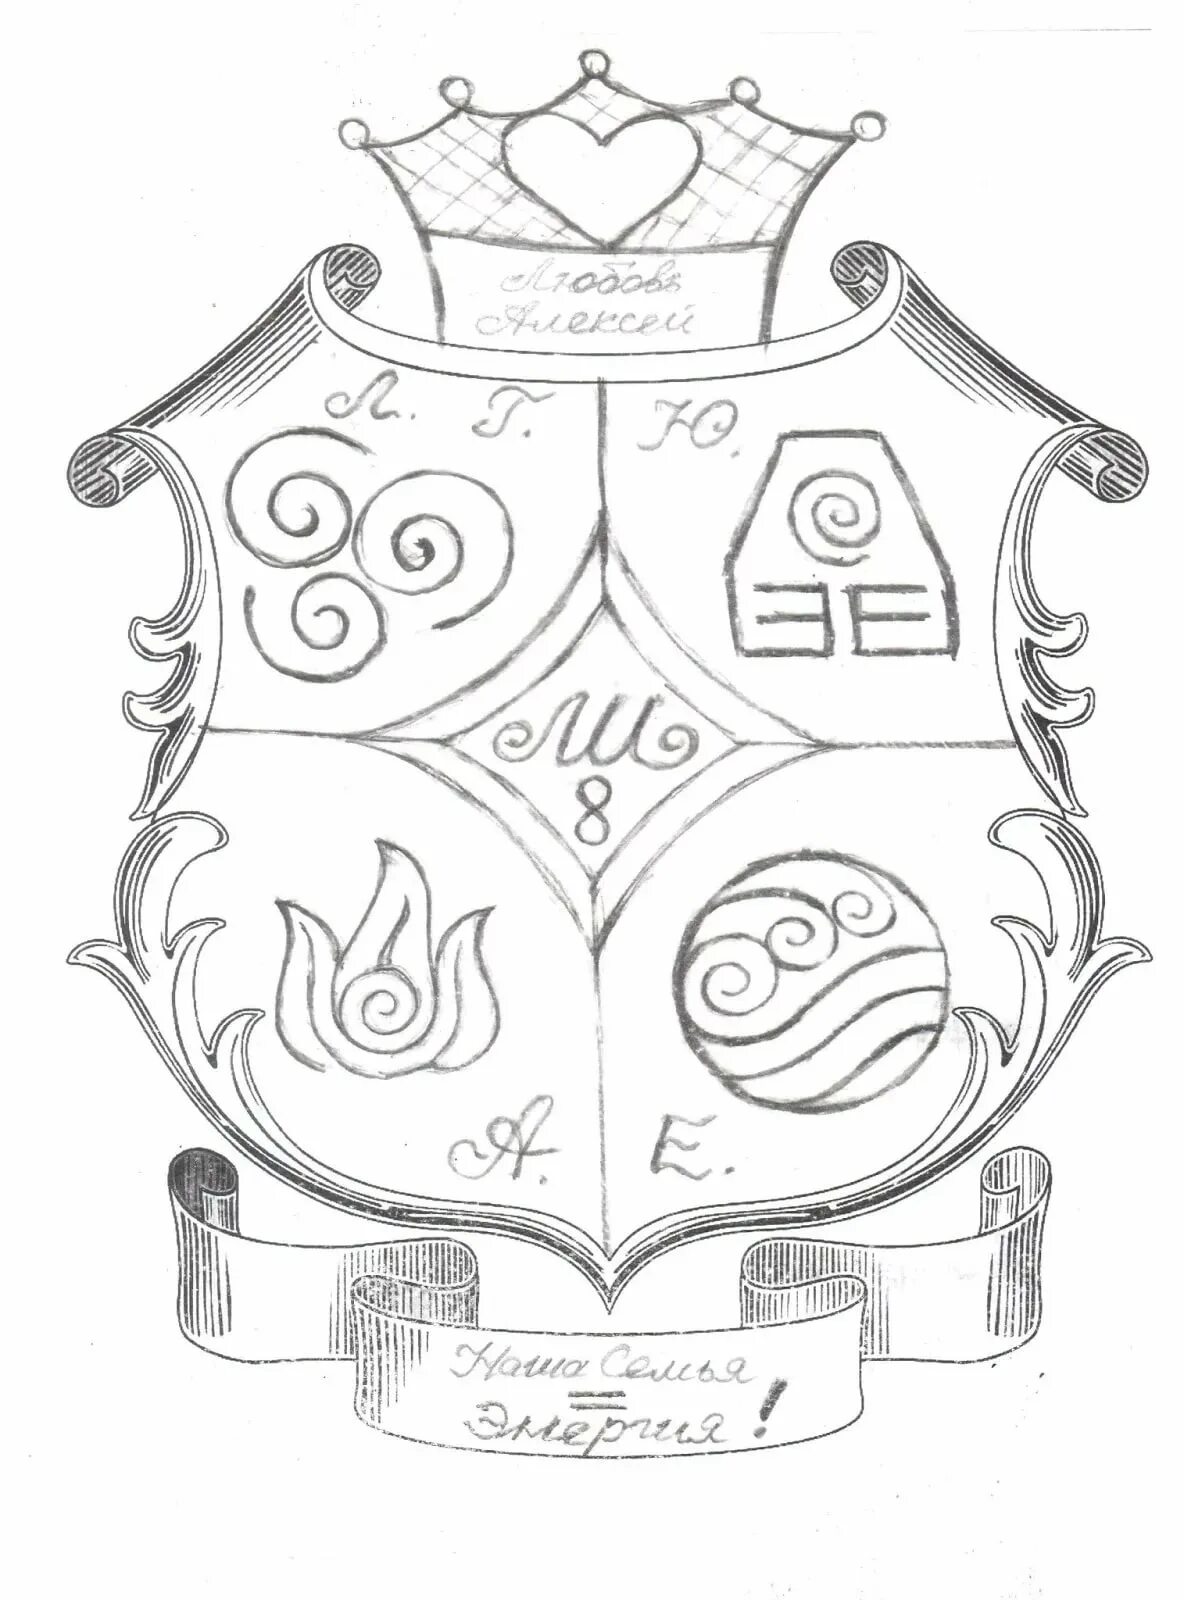 Нарисовать фамильный герб семьи. Герб рисунок. Эскиз фамильного герба. Идеи для герба семьи.